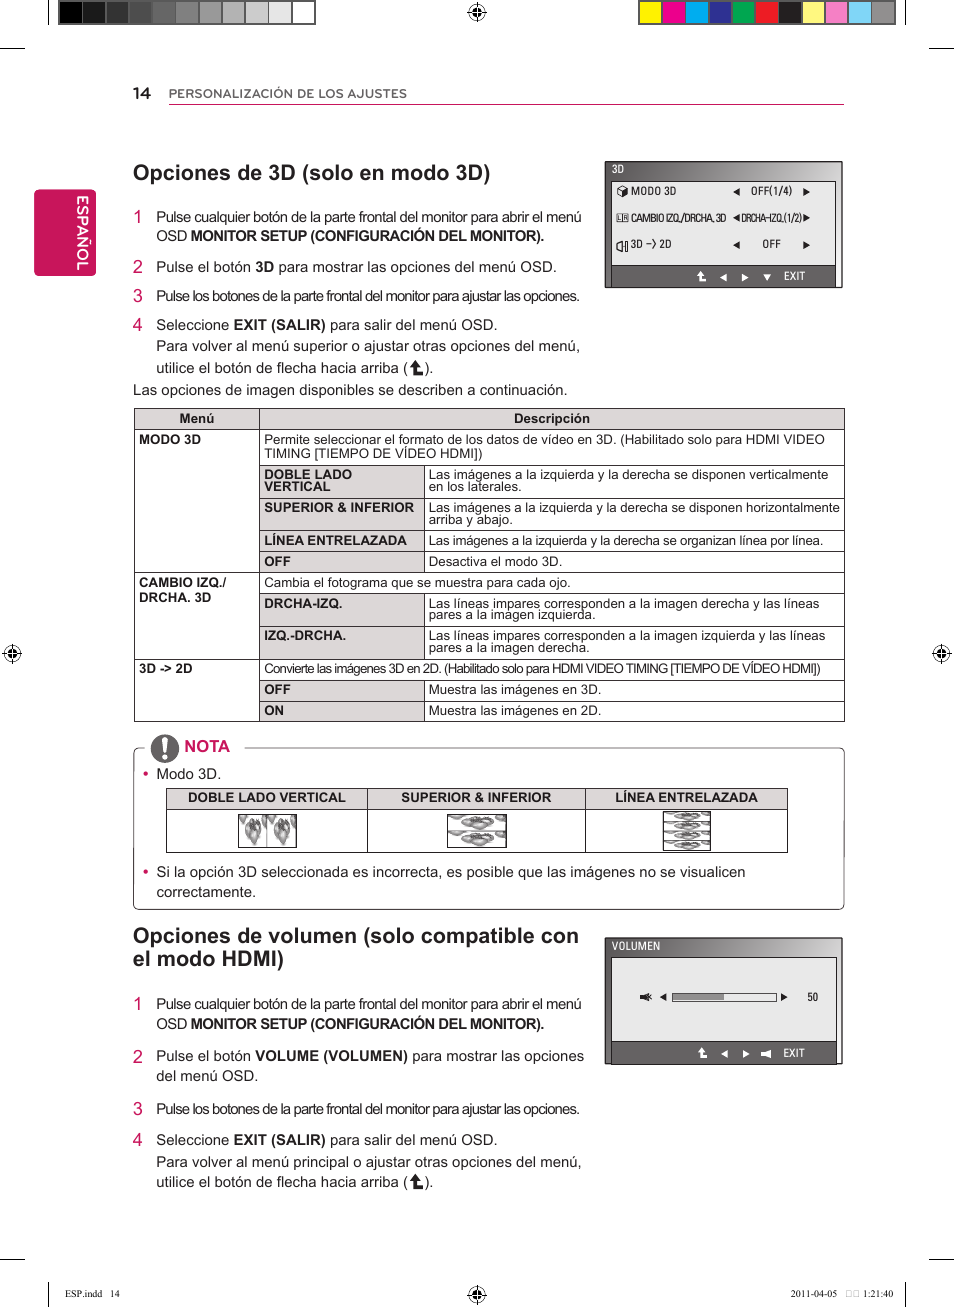 Opciones de 3d (solo en modo 3d), Opciones de volumen (solo compatible, Con el modo hdmi) | LG D2342P-PN Manual del usuario | Página 14 / 24